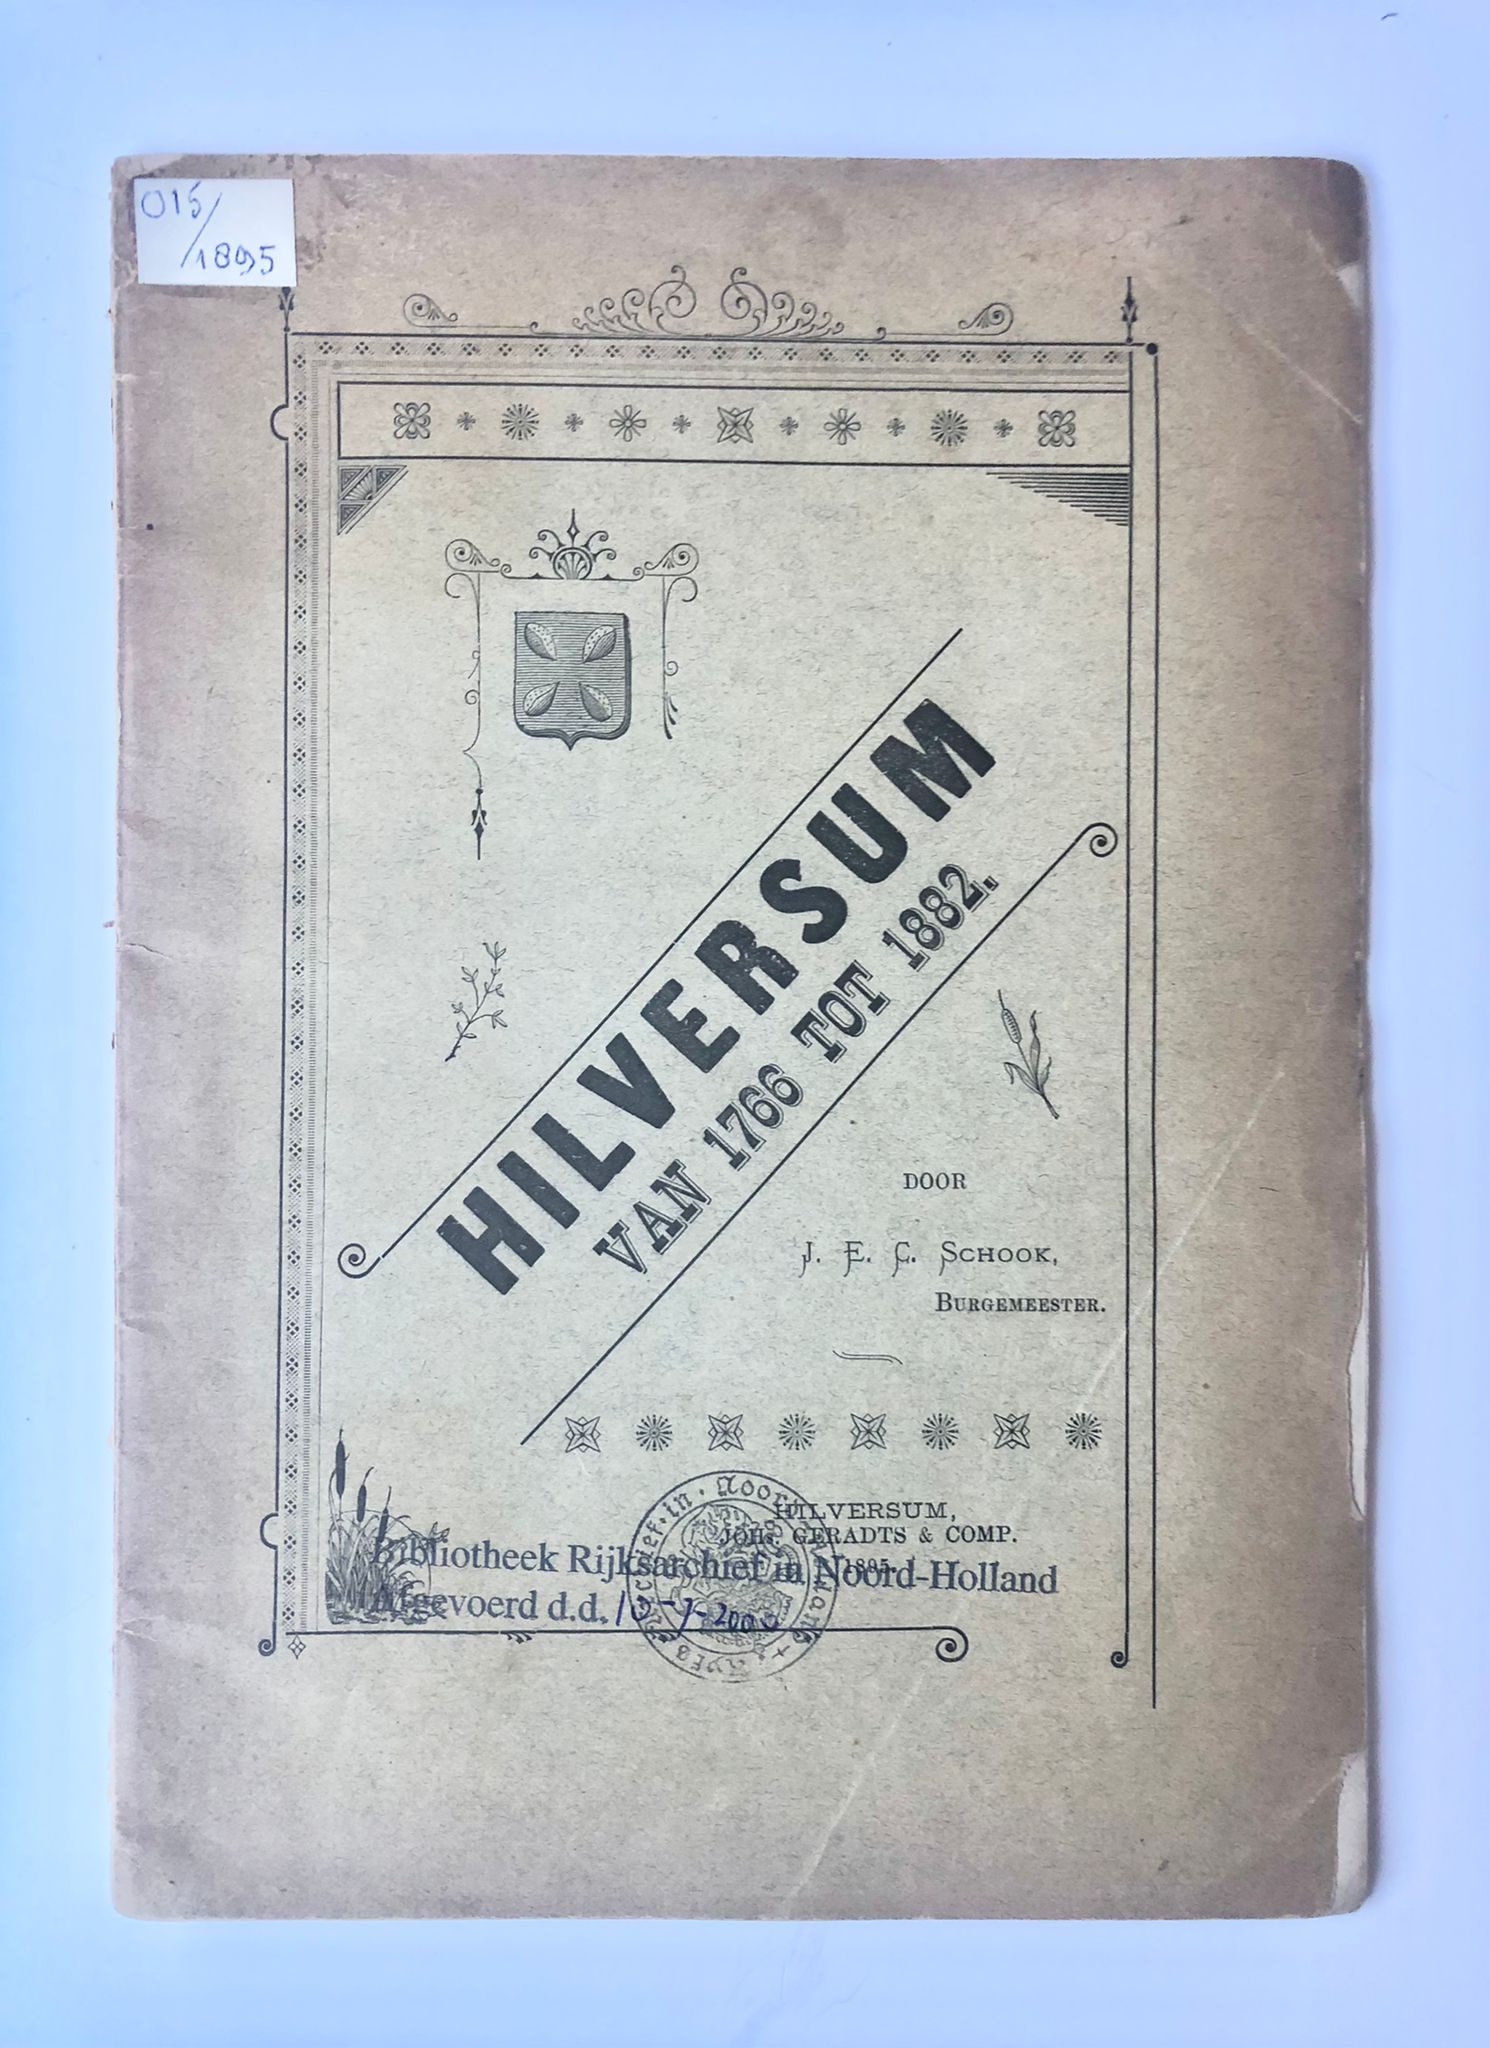 [Antique book Hilversum, Noord-Holland] (Een stukje dorpsgeschiedenis van) Hilversum van 1766 tot 1882. Door J. E. C. Schook, Burgemeester. Typ. Geradts & Comp. Hilversum, 1895, 37 pp.